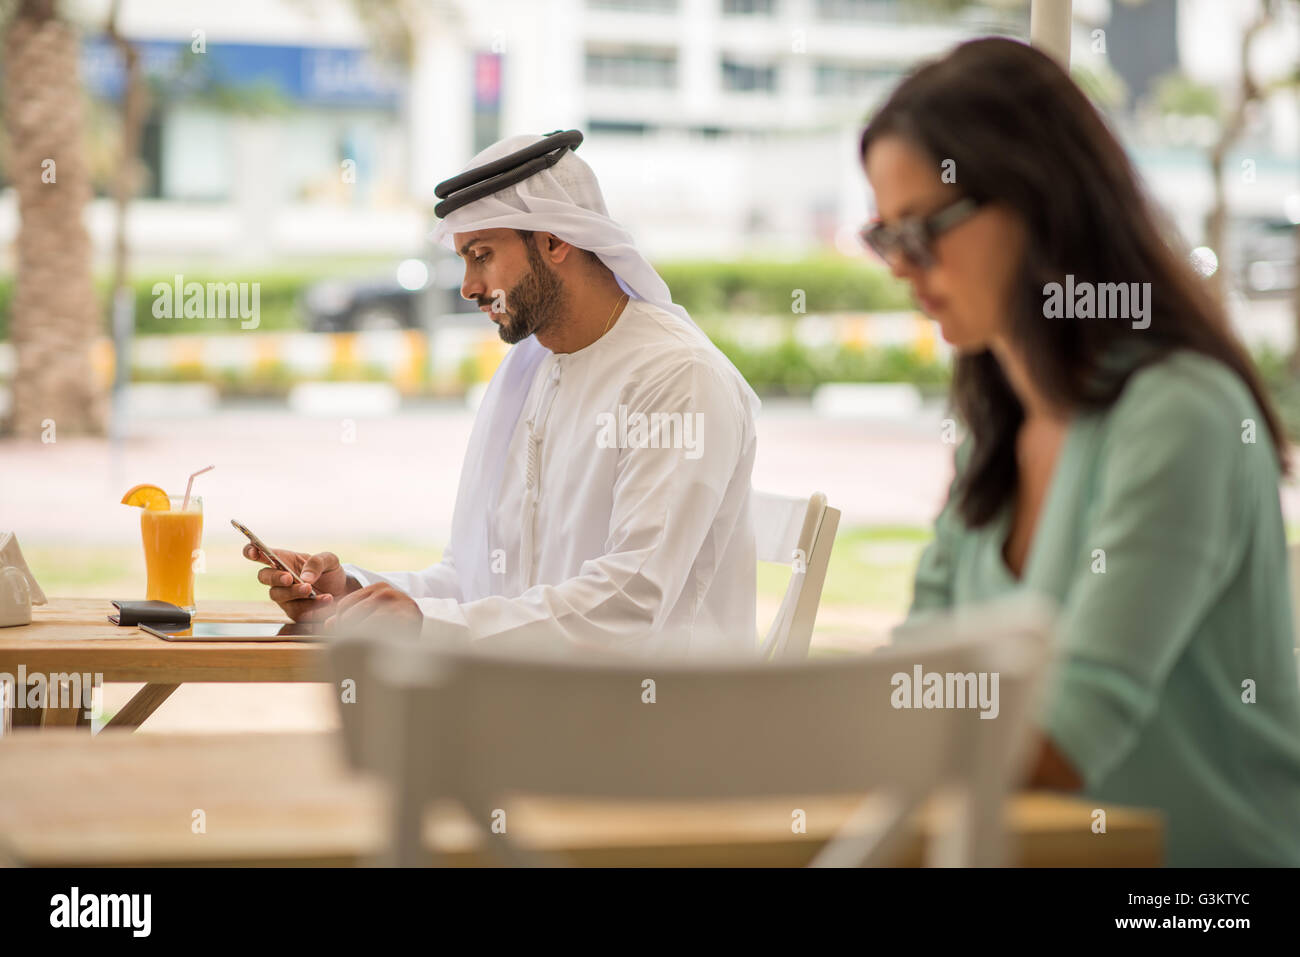 Nahen Ostens Mann tragen traditionelle Kleidung lesen Smartphone Text im Café, Dubai, Vereinigte Arabische Emirate Stockfoto